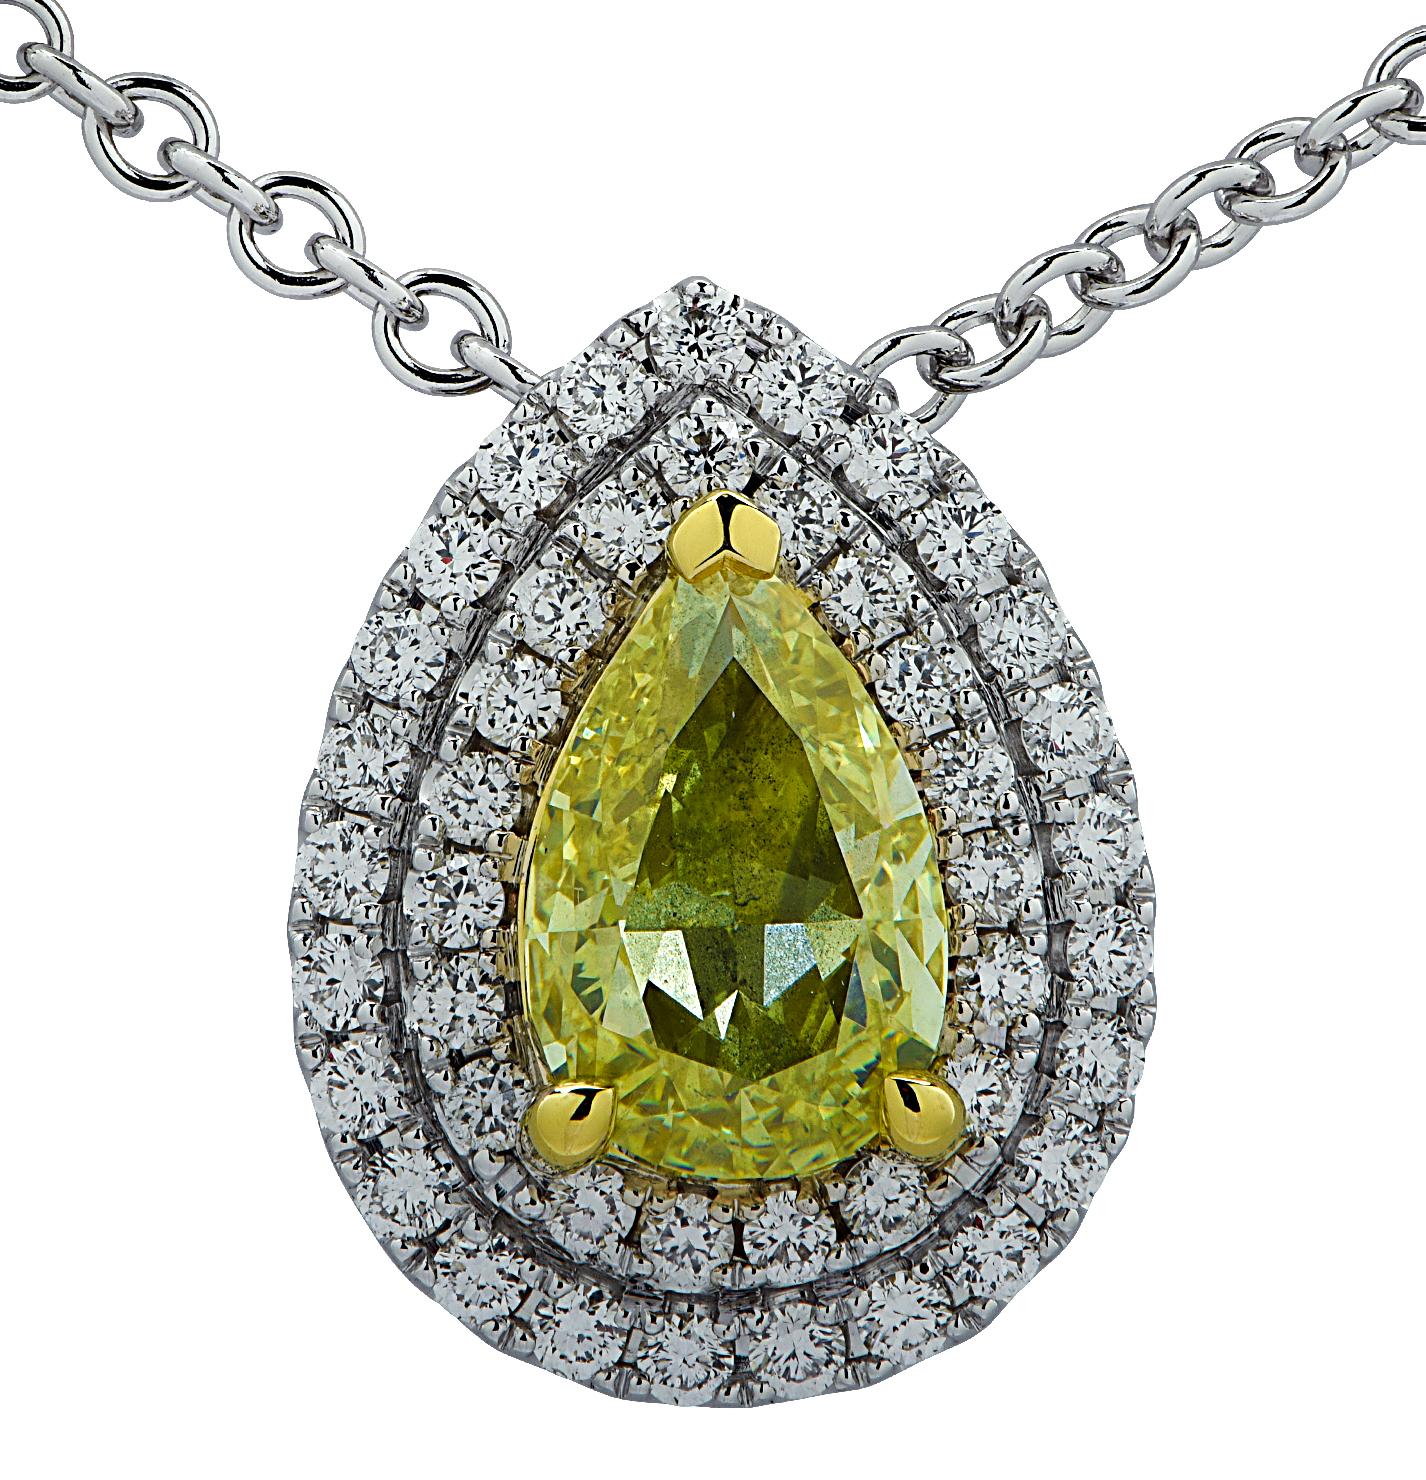   Superbe collier Vivid Diamonds en or 18 carats, présentant un diamant de fantaisie jaune poire certifié GIA pesant 1.05 carats, et 45 diamants ronds de taille brillant pesant 33 carats au total, couleur G, pureté VS-SI. Le diamant jaune en forme